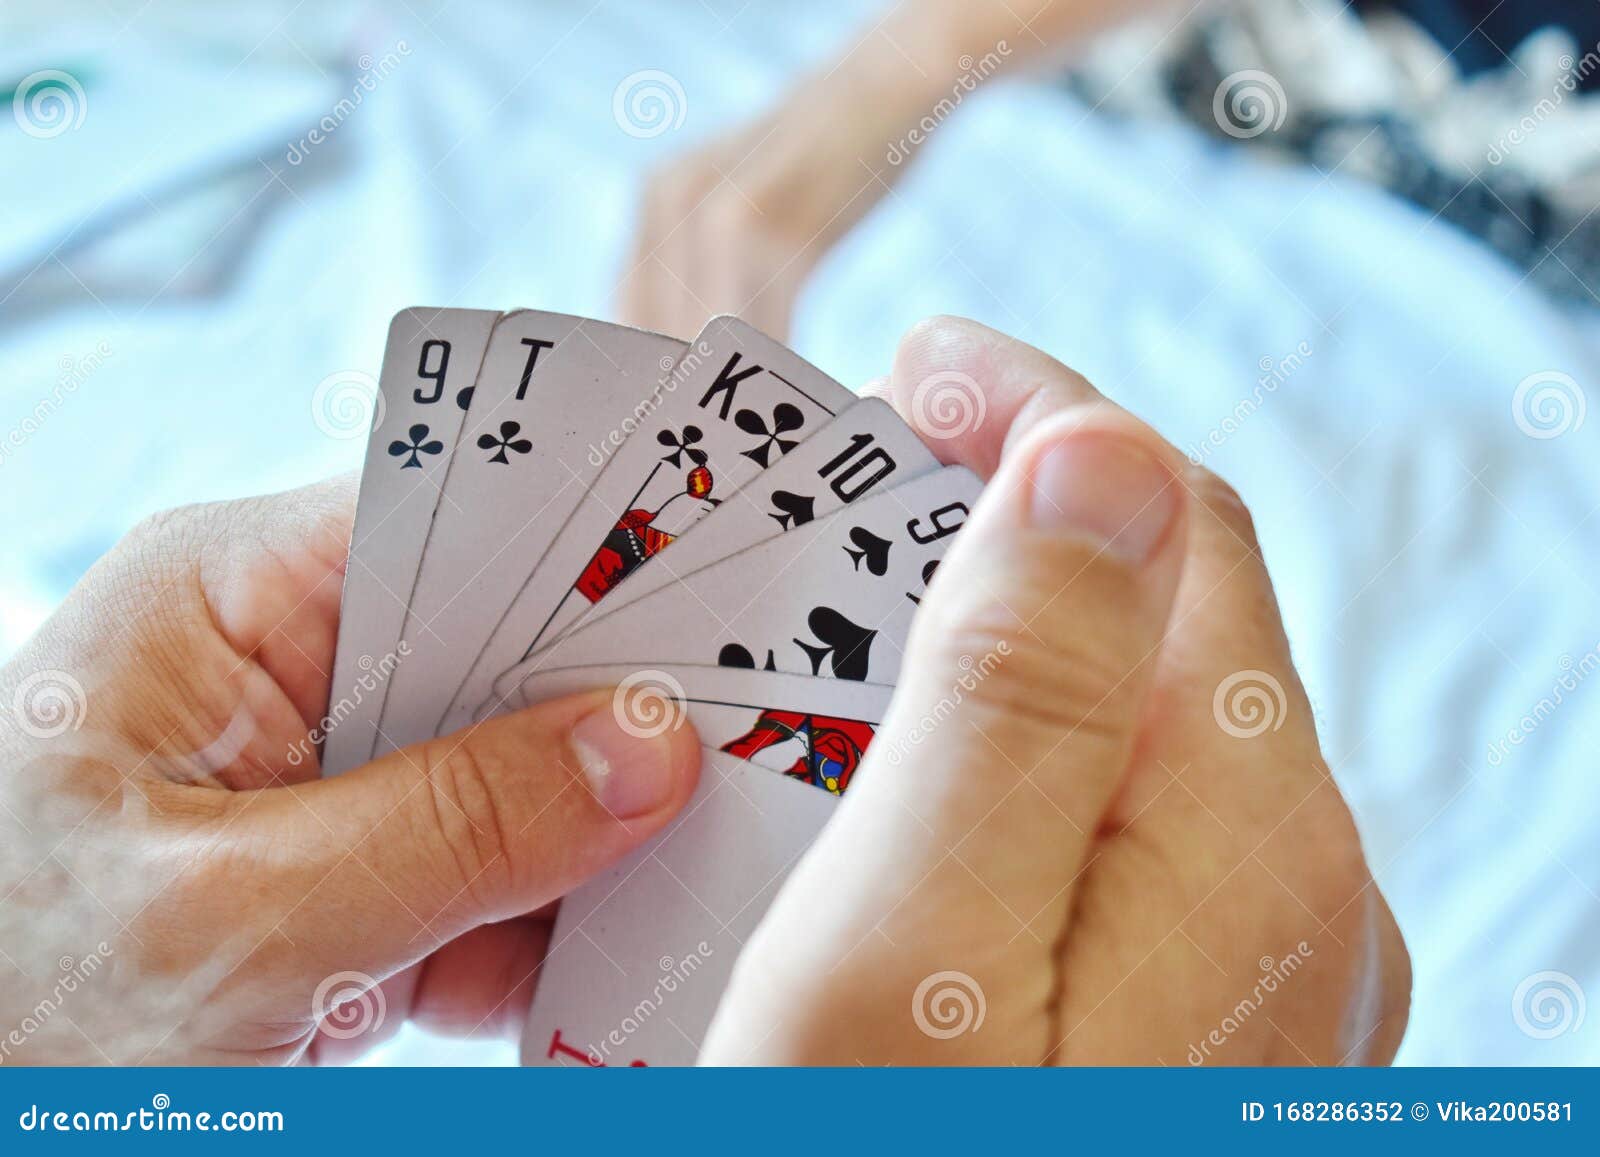 Азартные игры в карты играть алгоритм игры казино онлайн